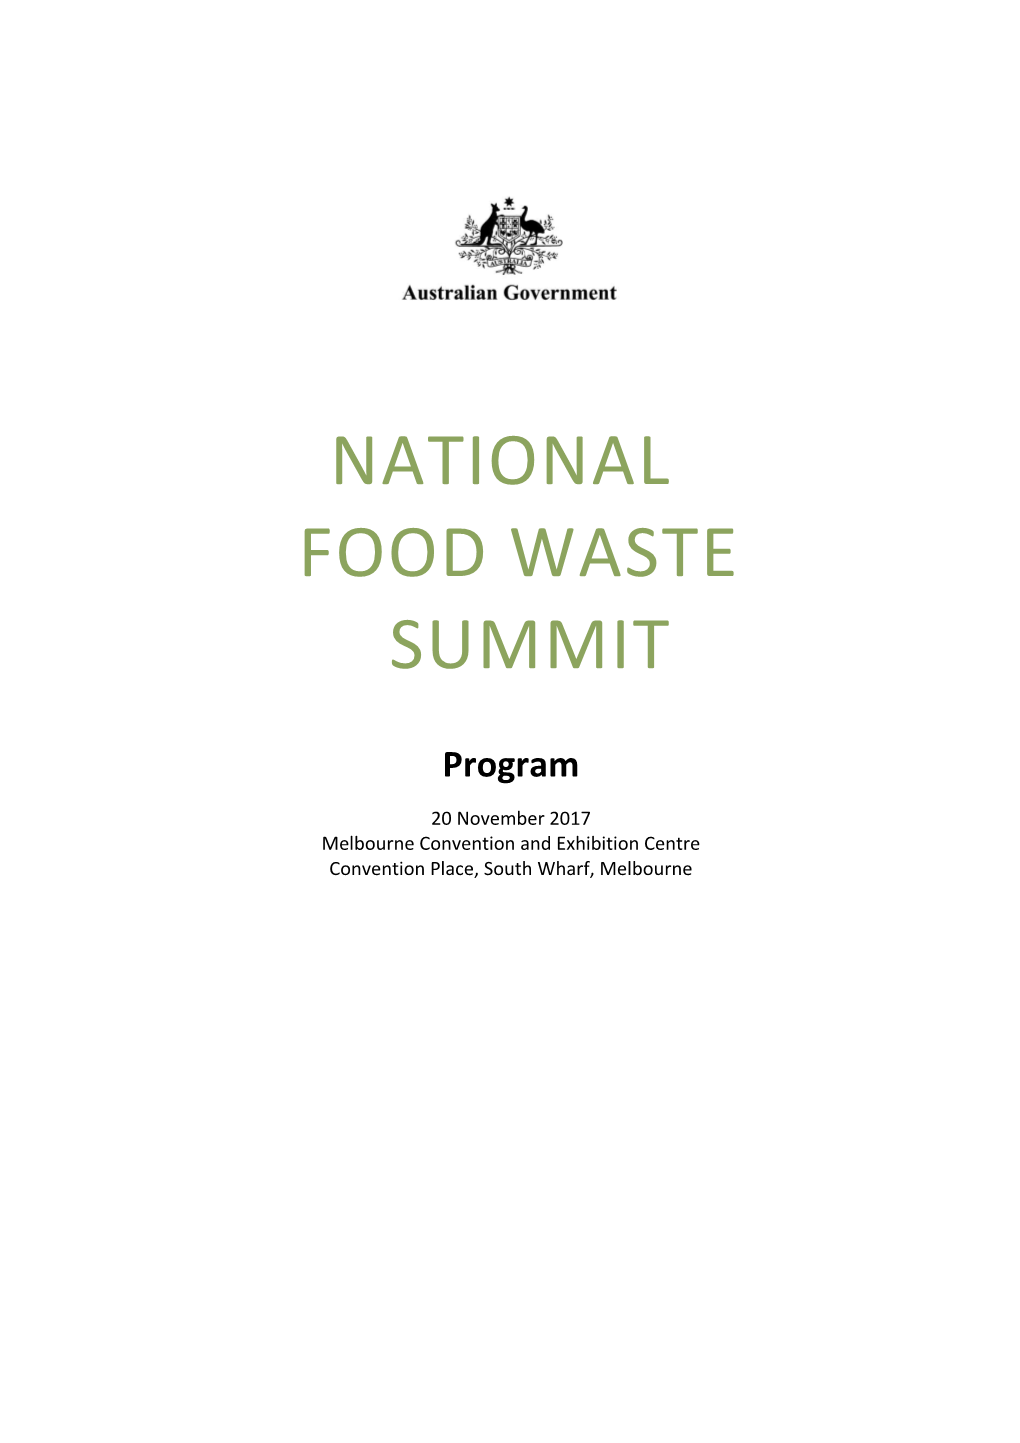 National Food Waste Summit Program